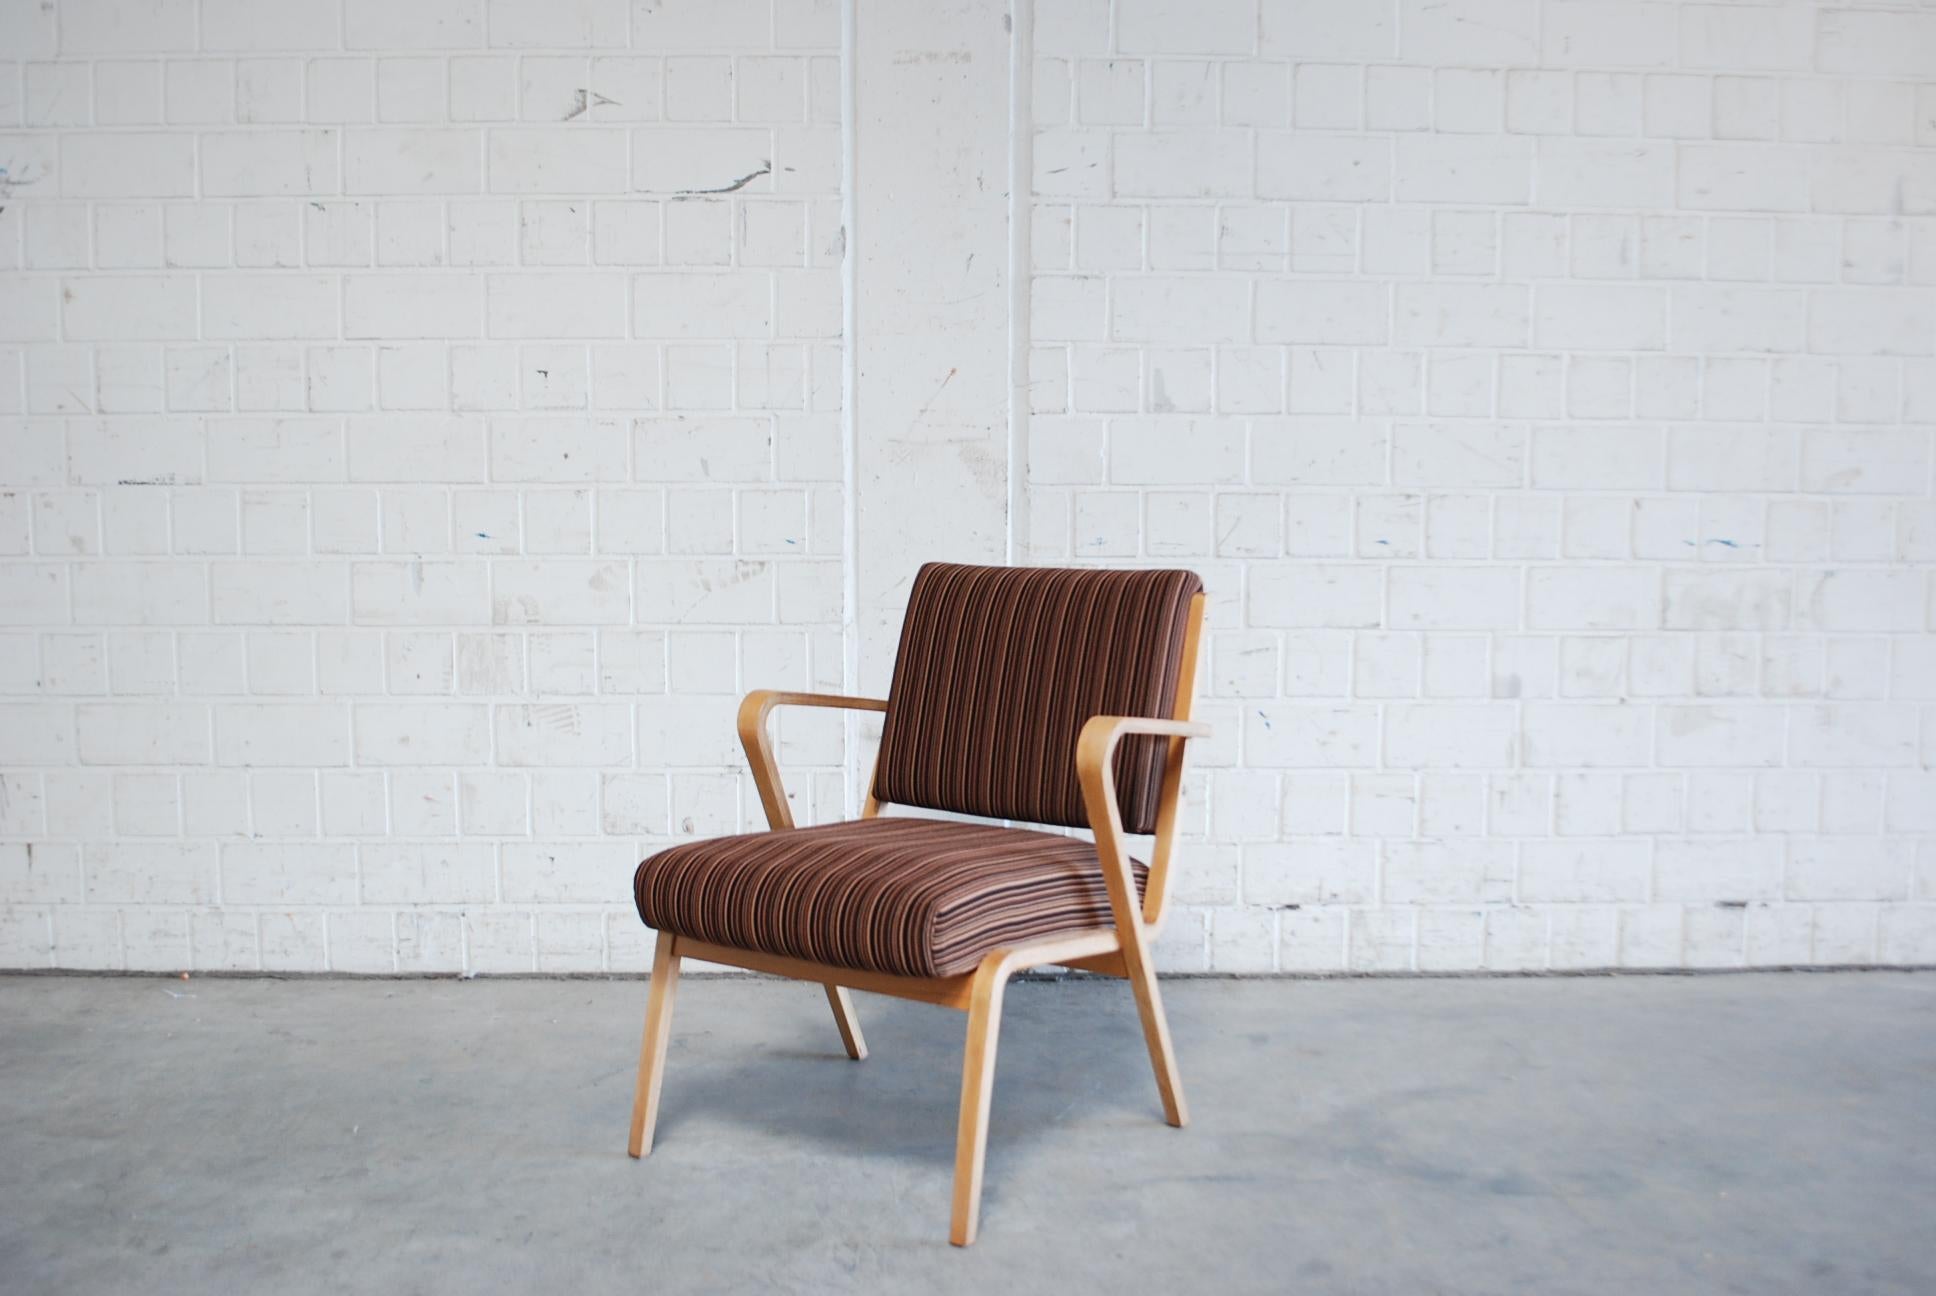 Ces fauteuils Bauhaus, modèle 53693 avec revêtement rayé, ont été conçus par Selman Selmanagic pour le VEB Deutsche Werkstätten Hellerau.
Ära allemande de style mi-séculaire Bauhaus de la RDA, conçue en 1957.
De 1945 à 1968, Selmanagic a été